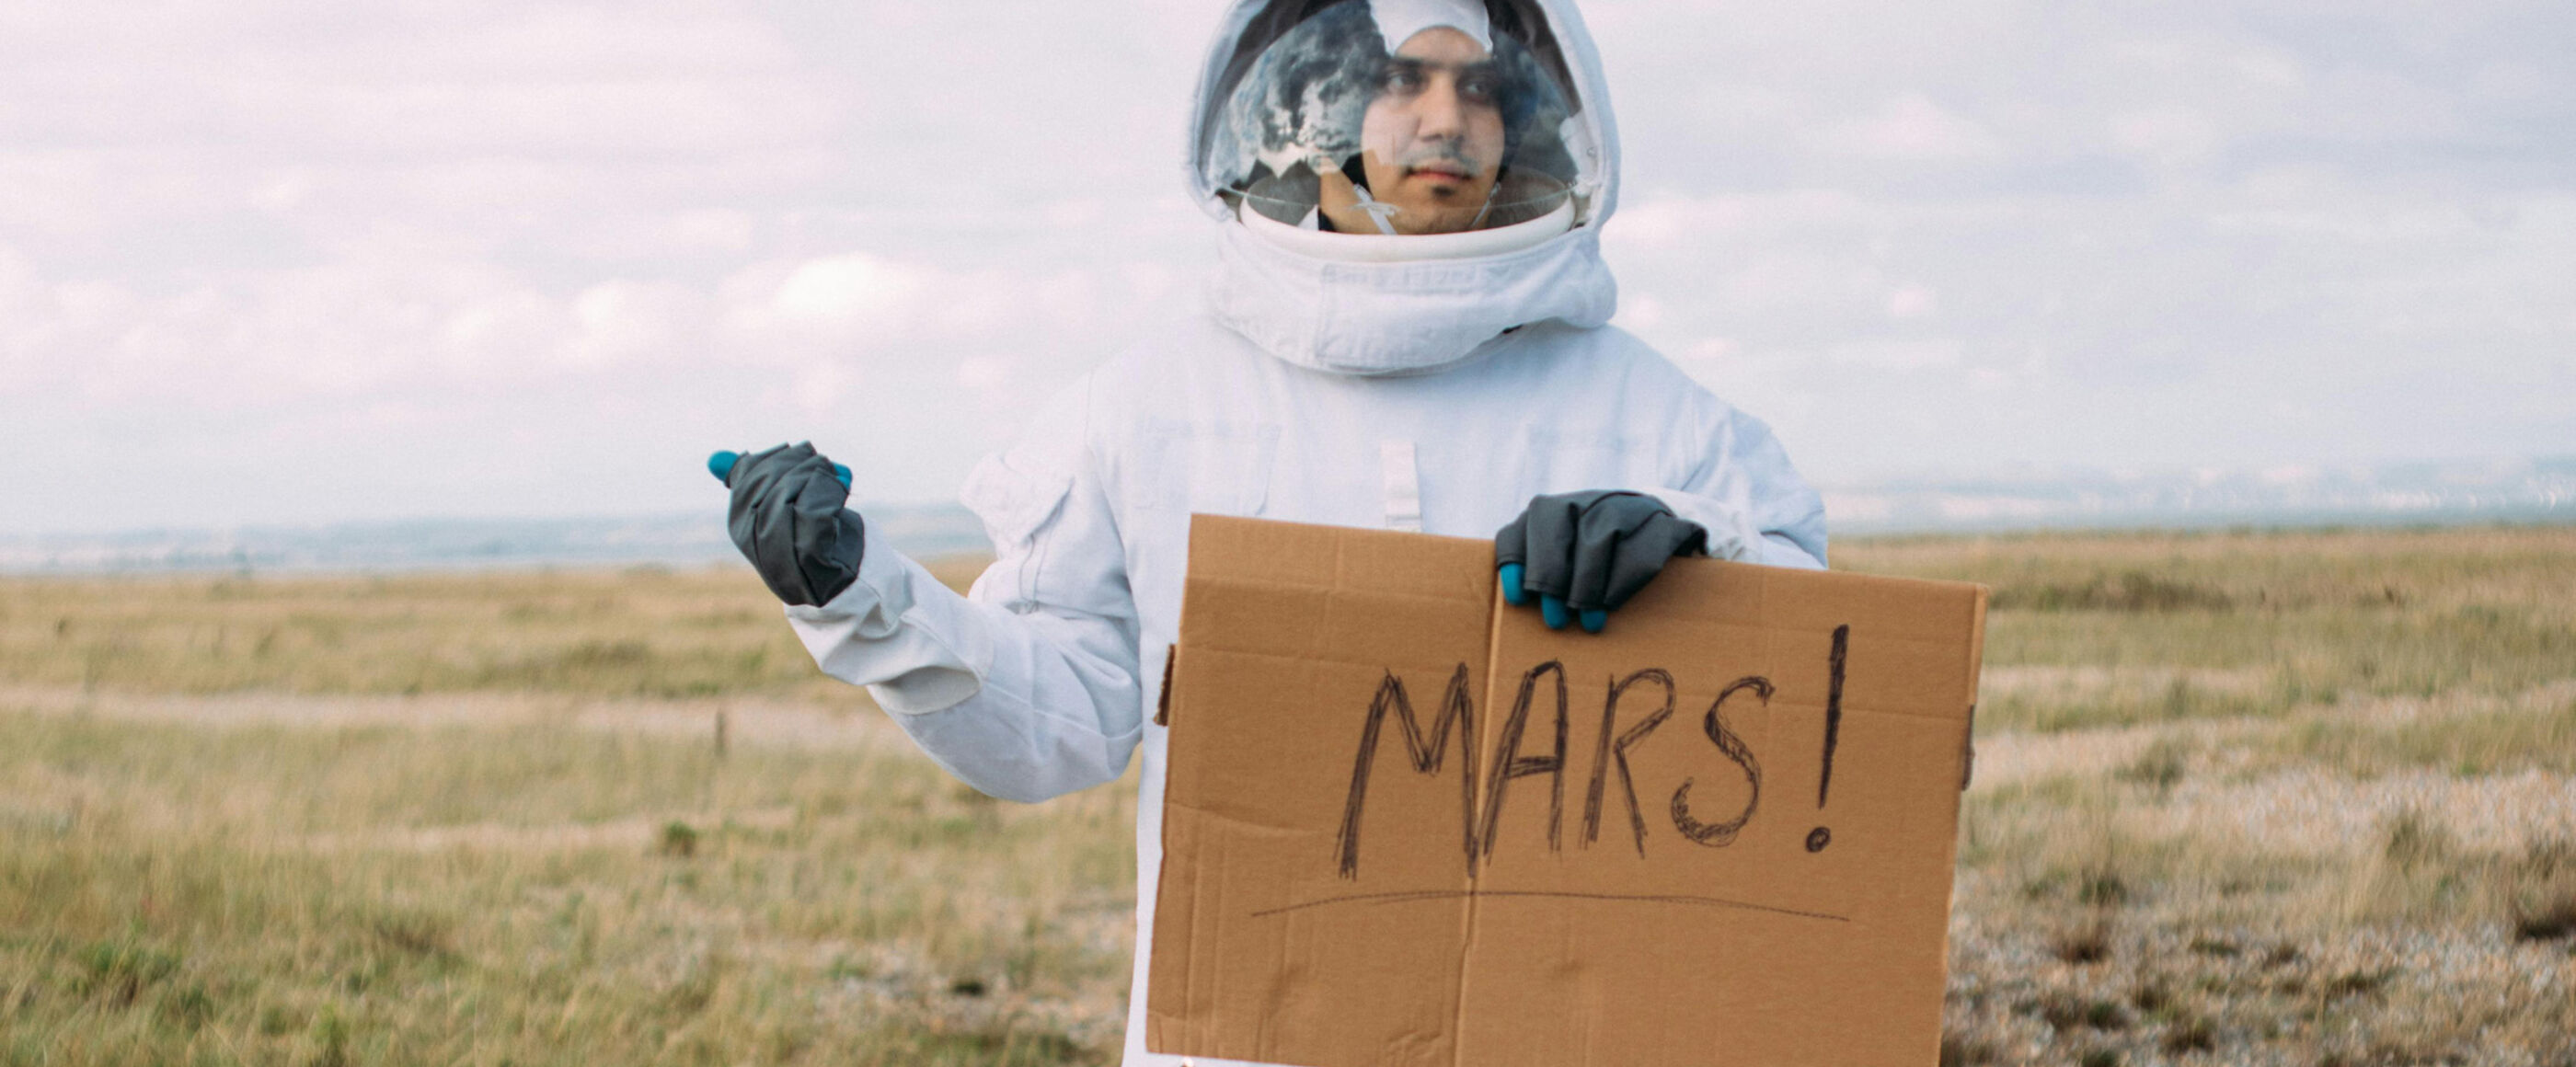 Eine als Mann lesbare Person in einem Raumanzug am Straßenrand und hält den Daumen raus. In der anderen Hand hält er ein Schild mit der Aufschrift MARS.